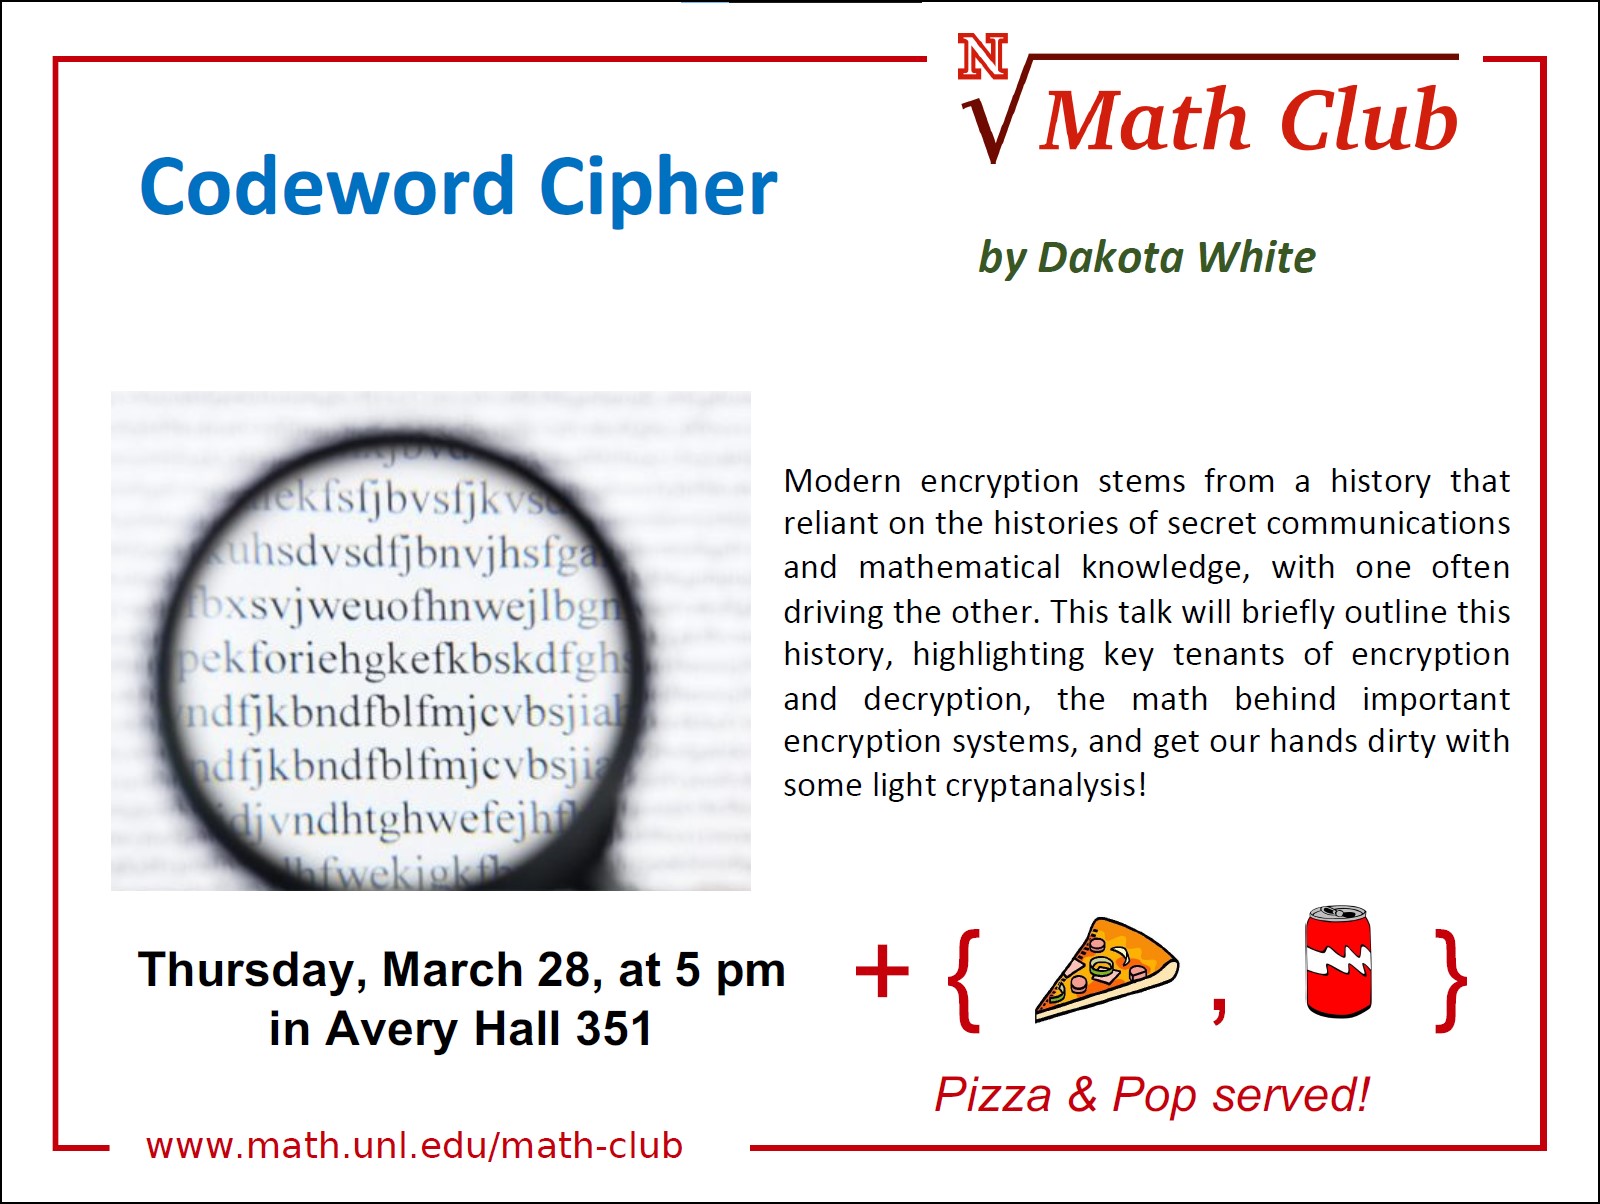 Math Club: Codeword Cipher